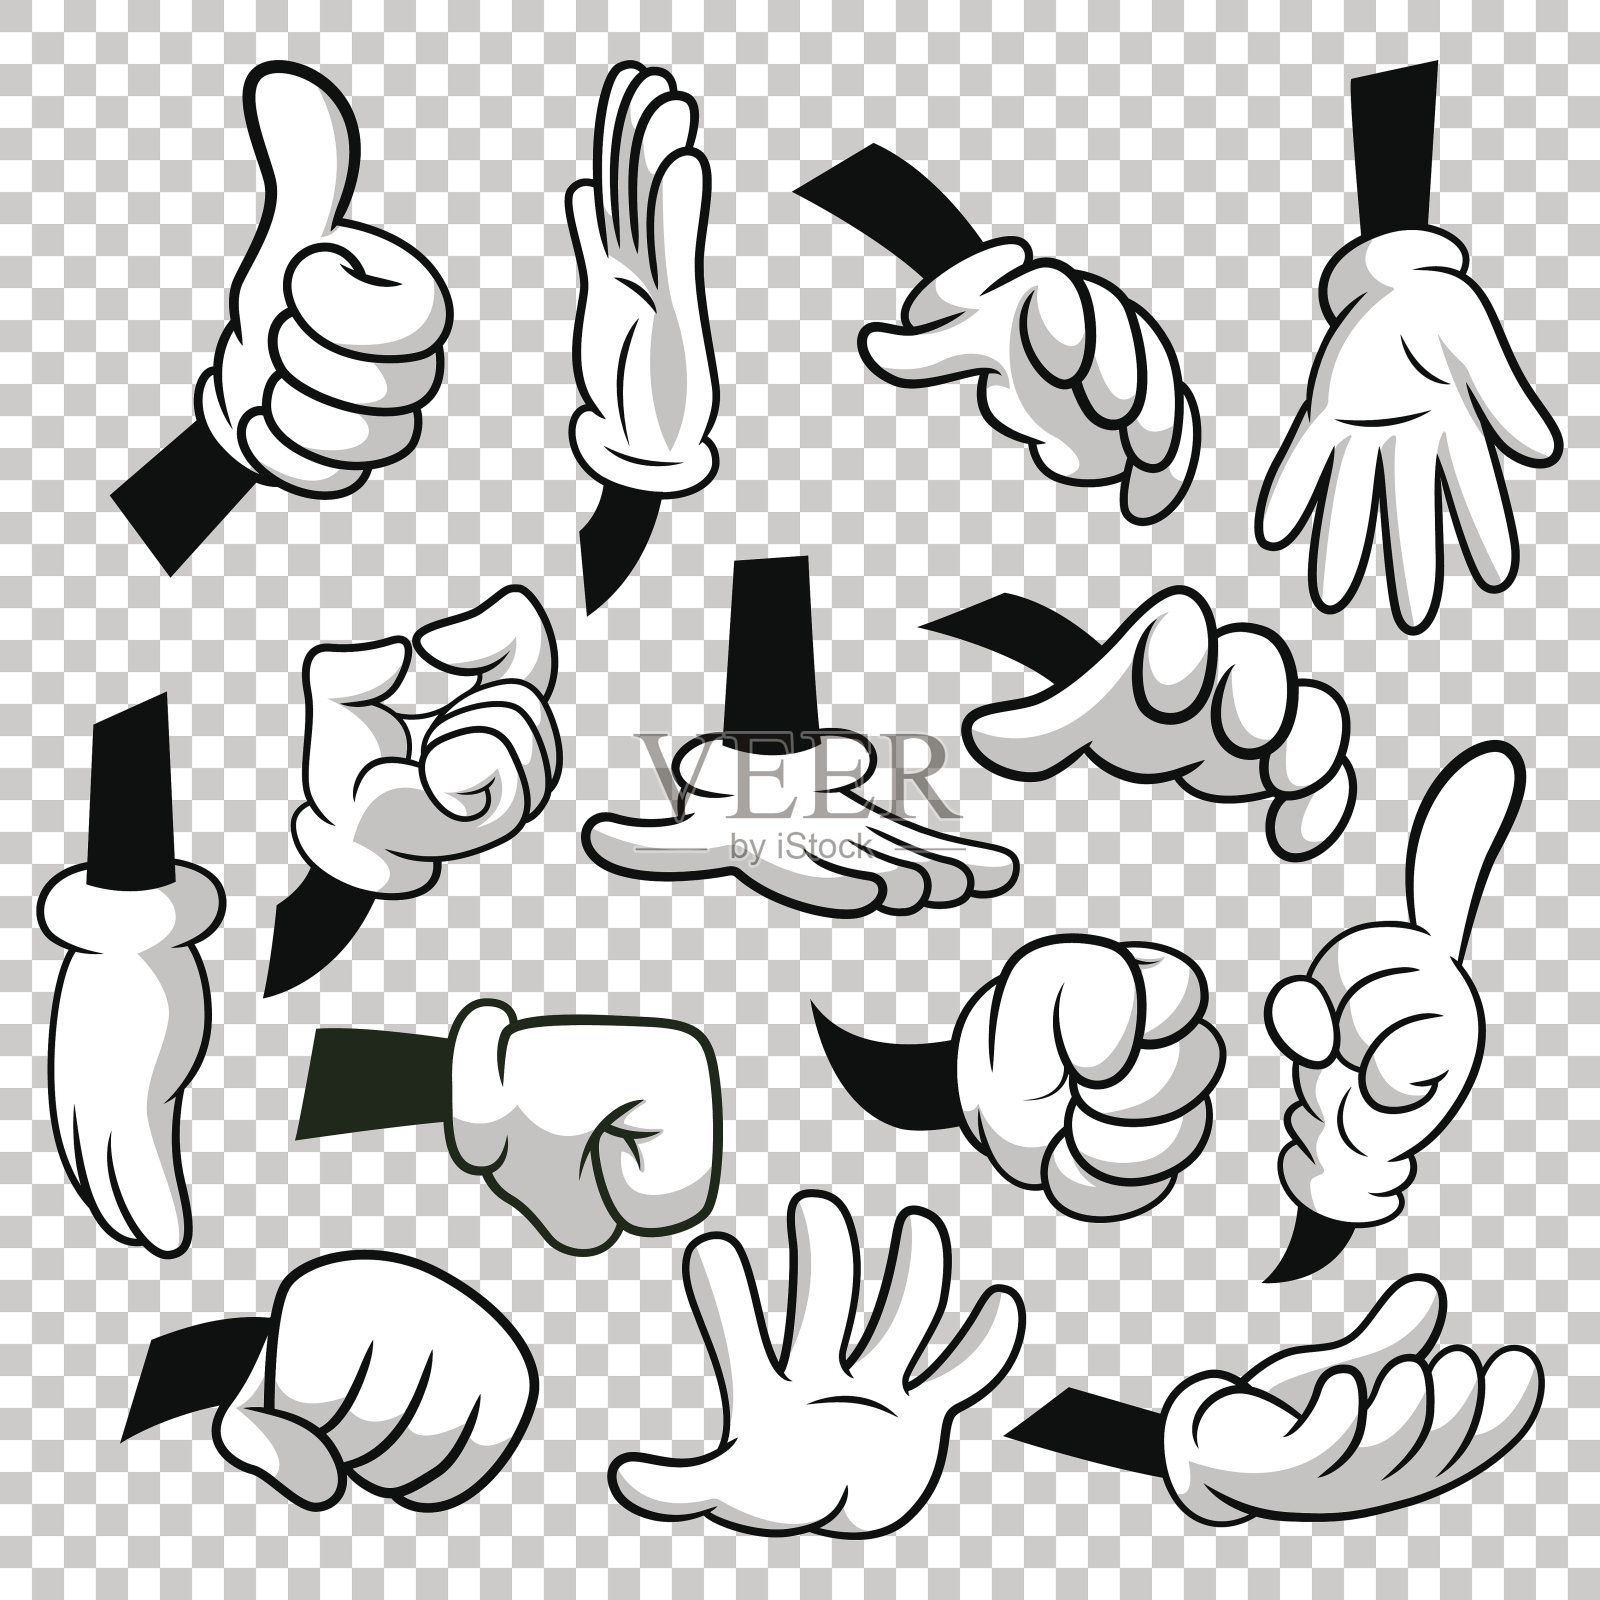 卡通手与手套图标设置隔离在透明的背景。矢量剪贴-身体的部分，手臂在白手套。手势集合。EPS8中的设计模板设计元素图片